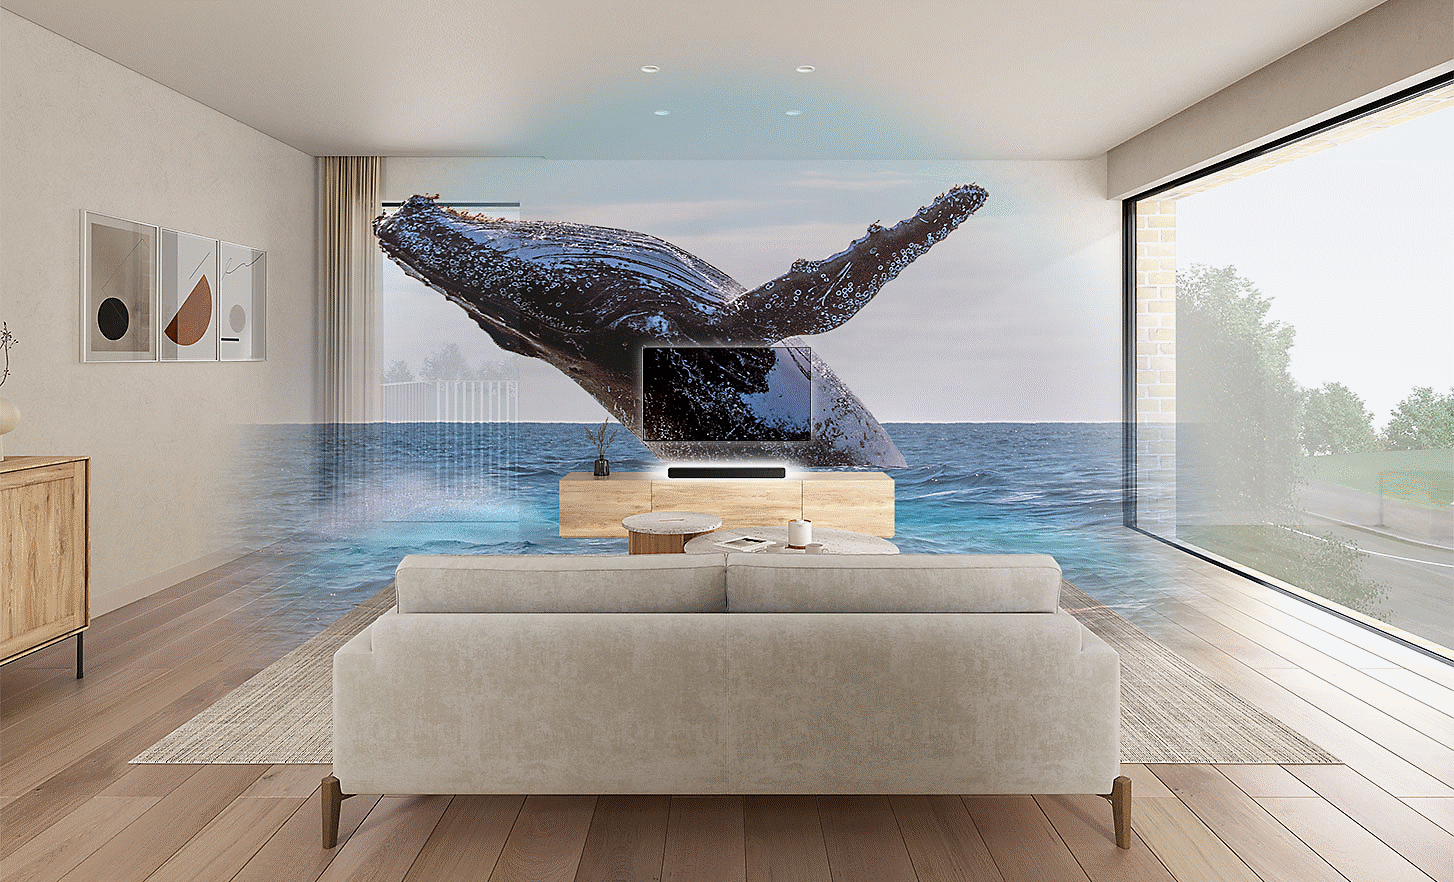 Imagen de un salón con una TV y una barra de sonido HT-S2000 en el centro, una imagen con marca de agua de una ballena encima